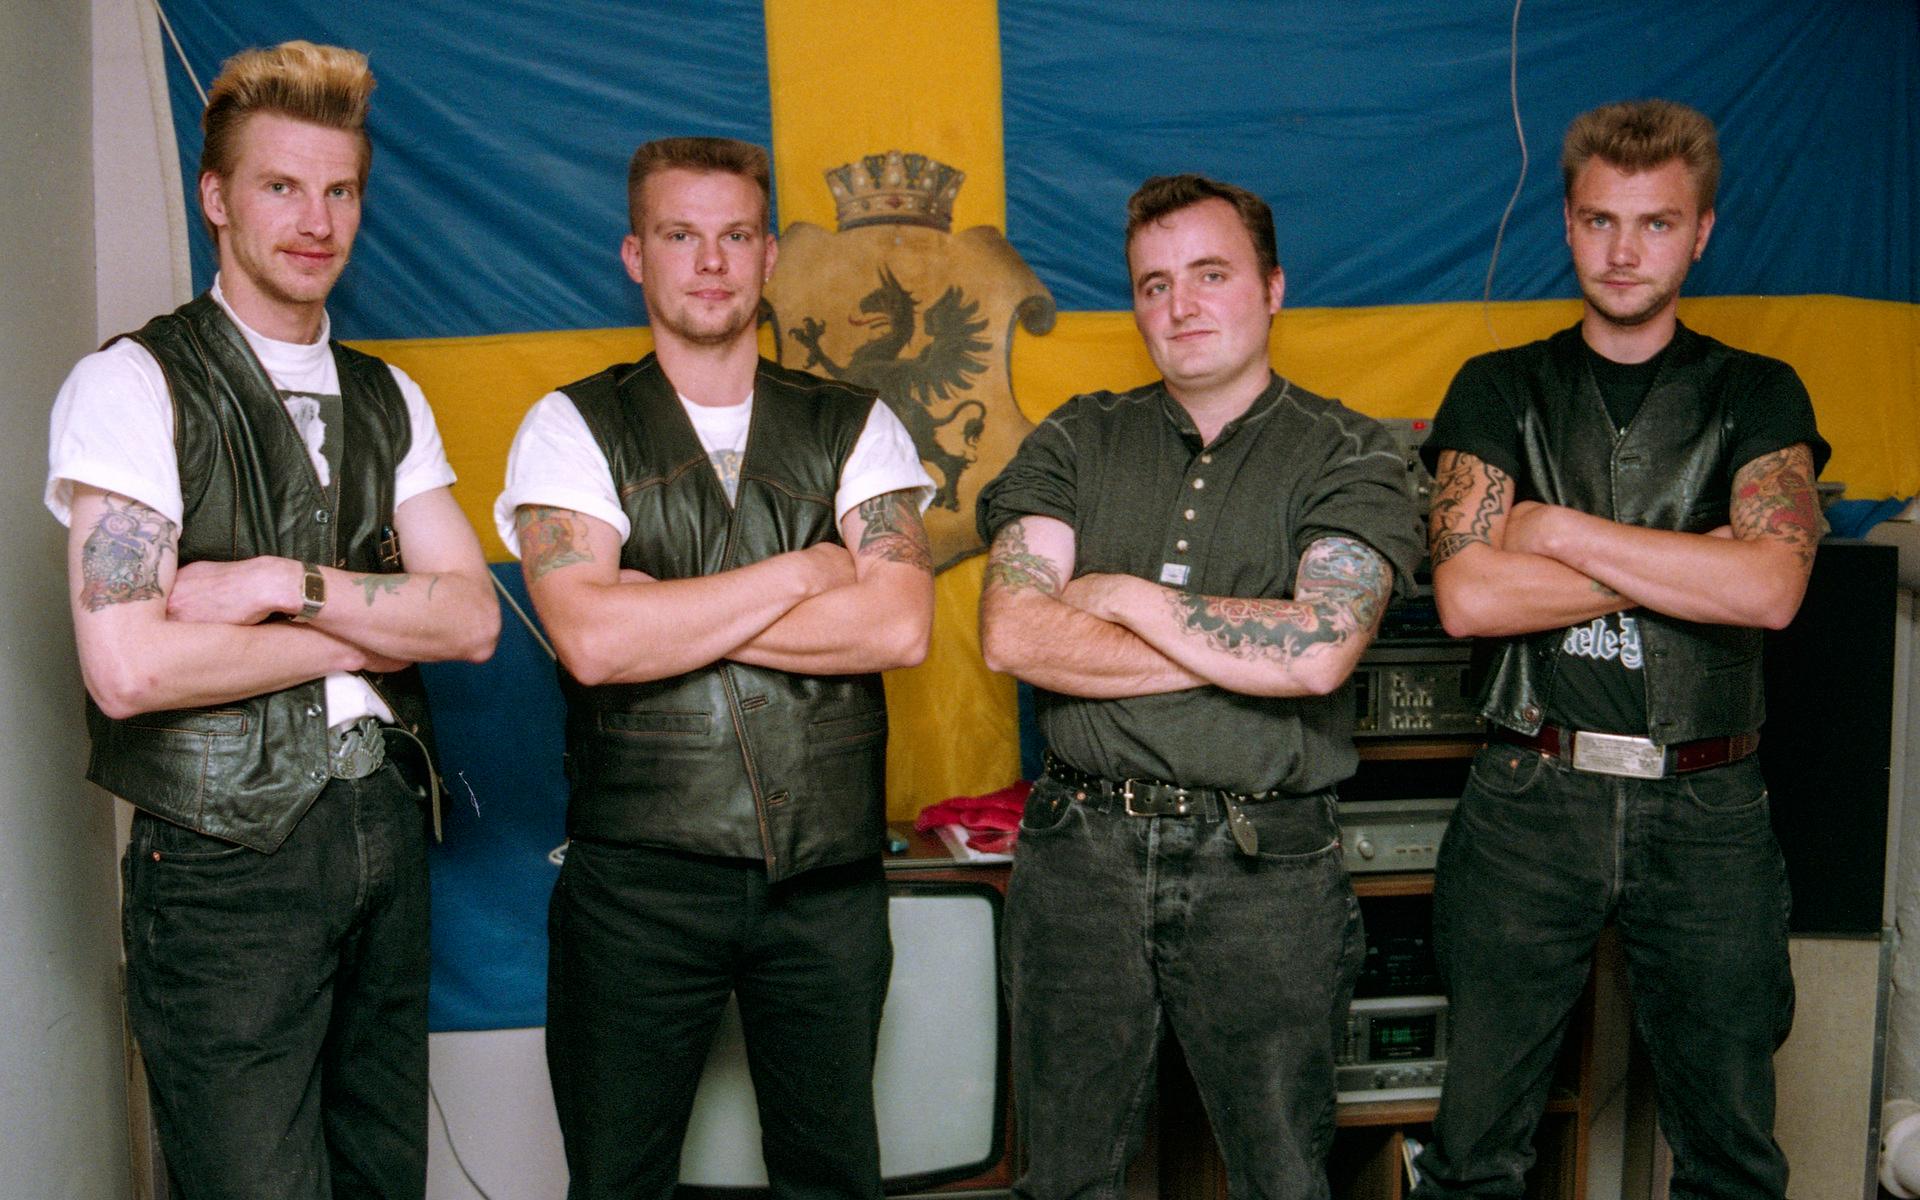 Rockbandet Ultima Thule fr. v. Janne Thörnblom, Niklas Adolfsson, Ulf Hansen och Tomas Krohn, poserar framför den svenska flaggan med vapensköld i gula korset. Bilden är något beskuren.